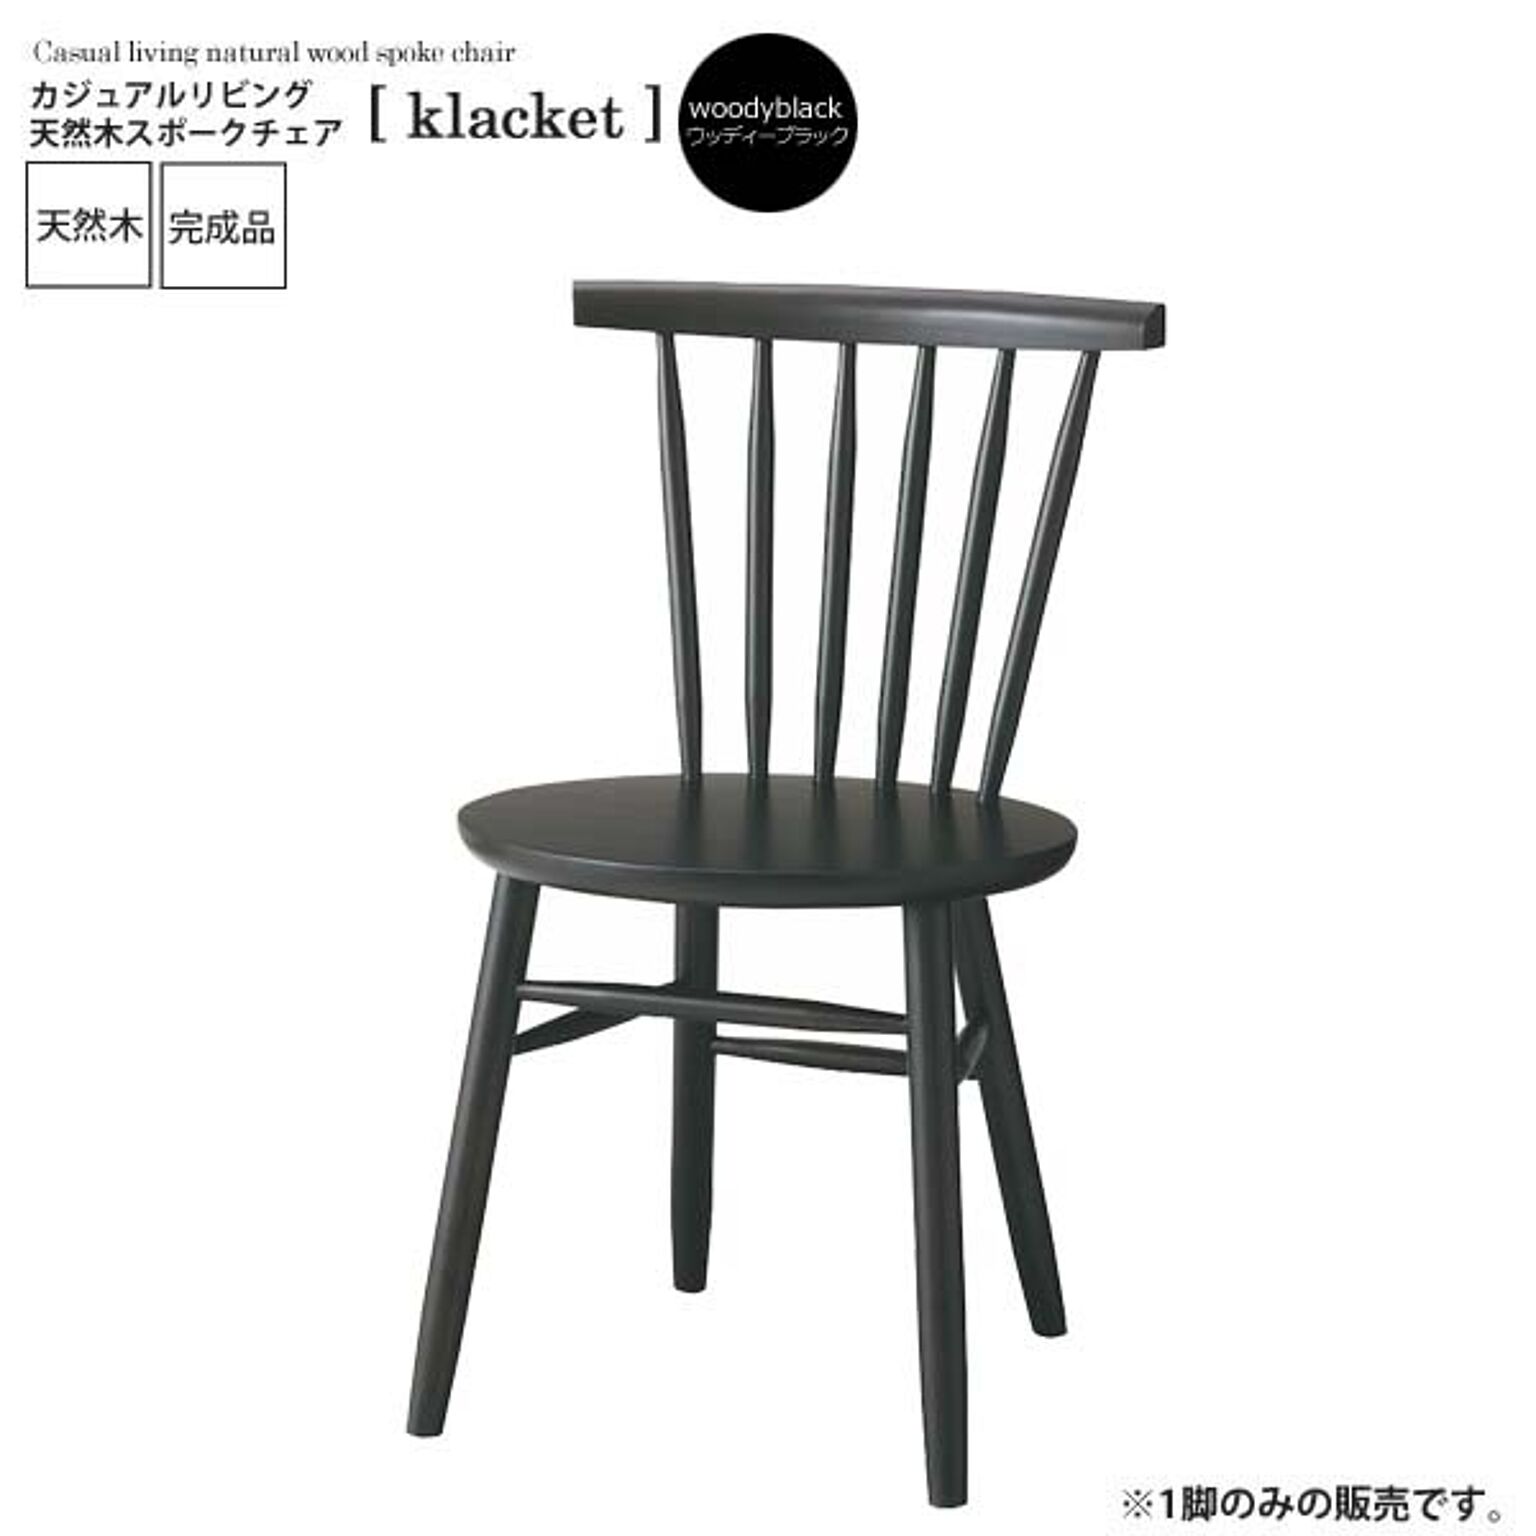 ウッディブラック ： カジュアルリビング 天然木スポークチェア【klacket】 ウッディブラック(black) (ナチュラル) イス 椅子 リビングチェア ワーク デスクチェア 食卓 